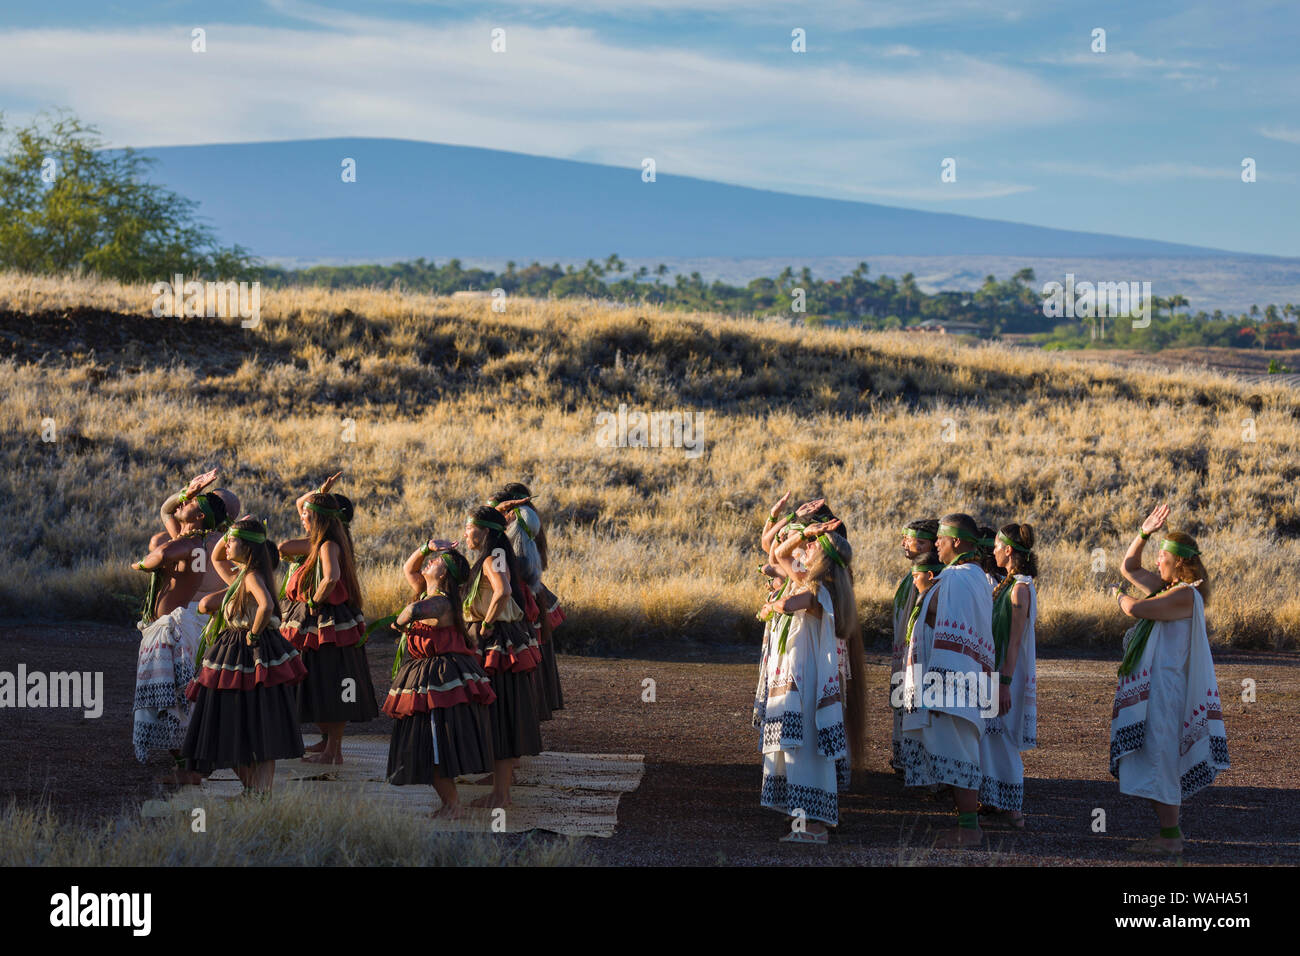 Les spectacles de danse Hula Festival Culturel à Pu'ukohala à Heiau NP sur Hawaii Island avec le Mauna Loa lointain. Banque D'Images